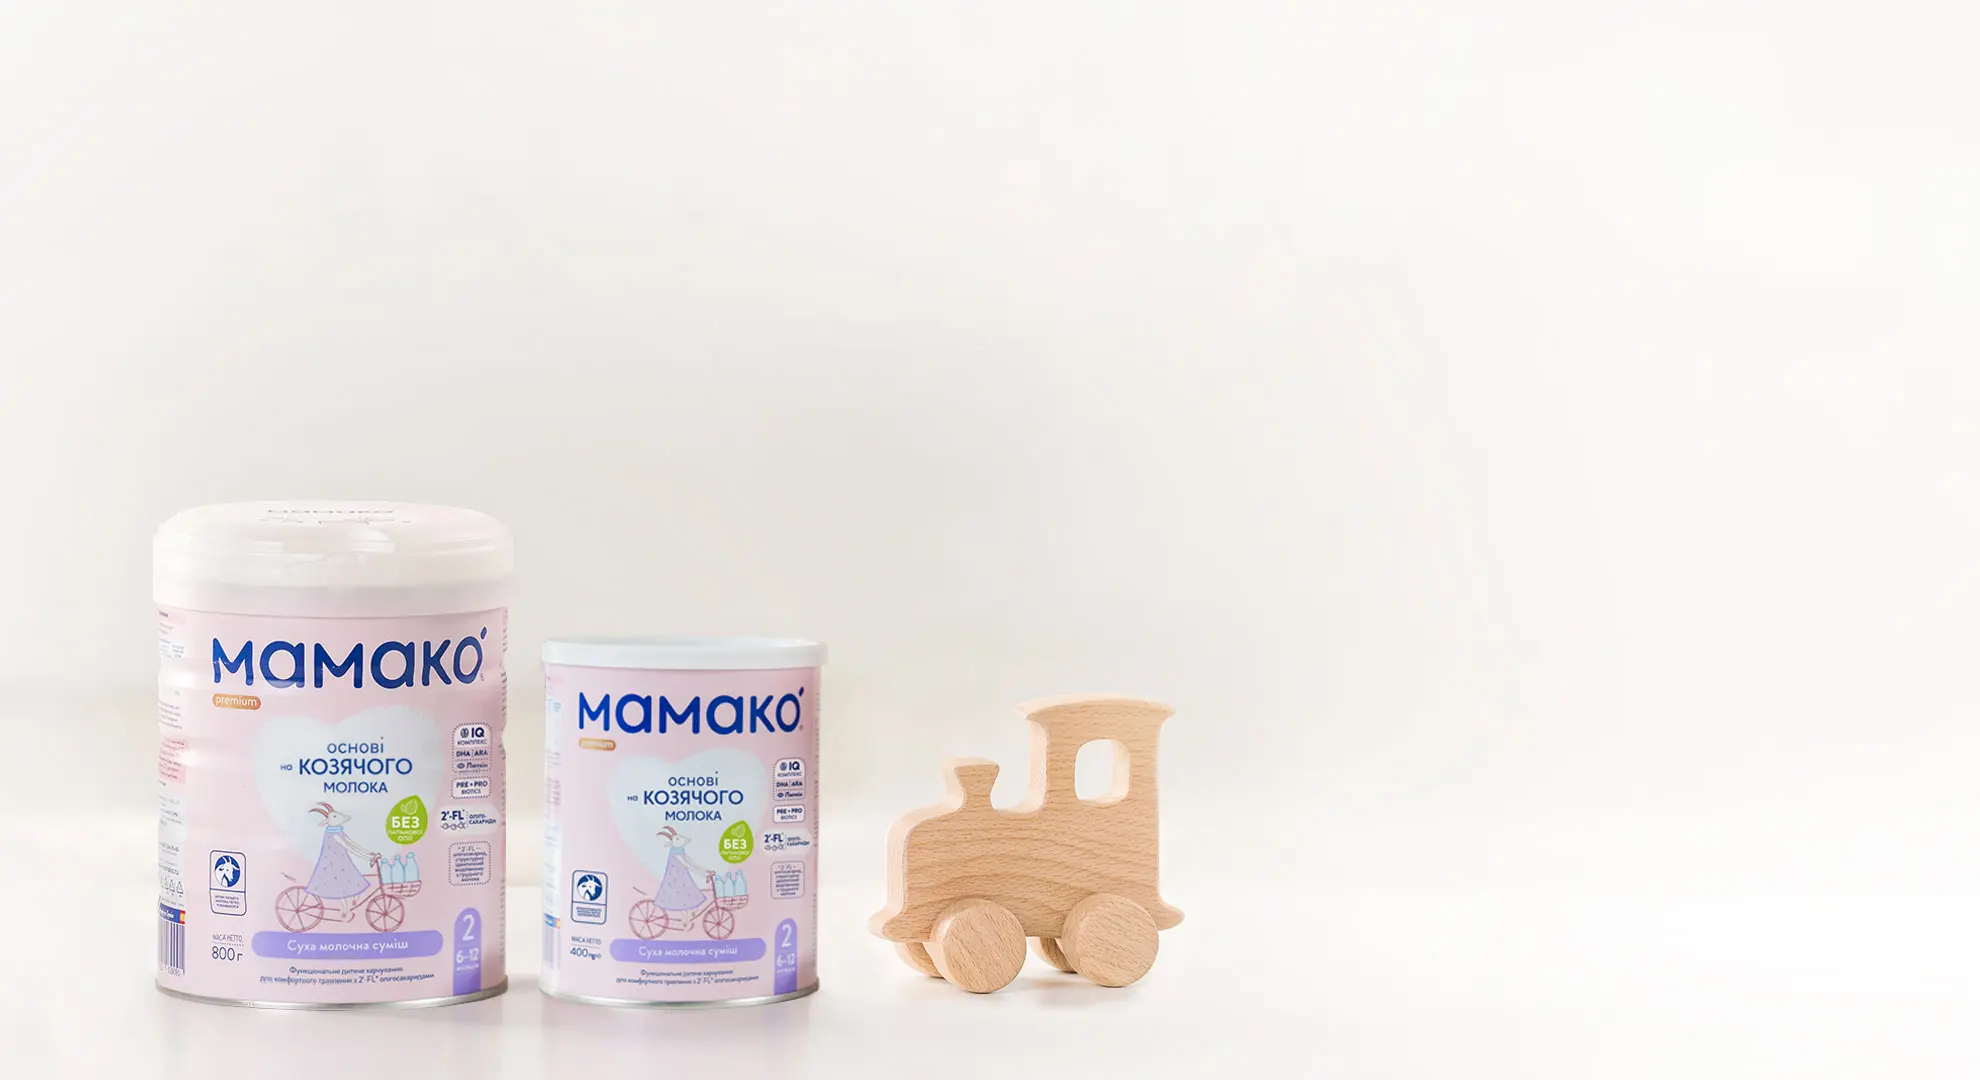 MAMAKO<sup>®</sup> 2 Premium з 2'–FL (від 6 до 12 місяців) 800 г